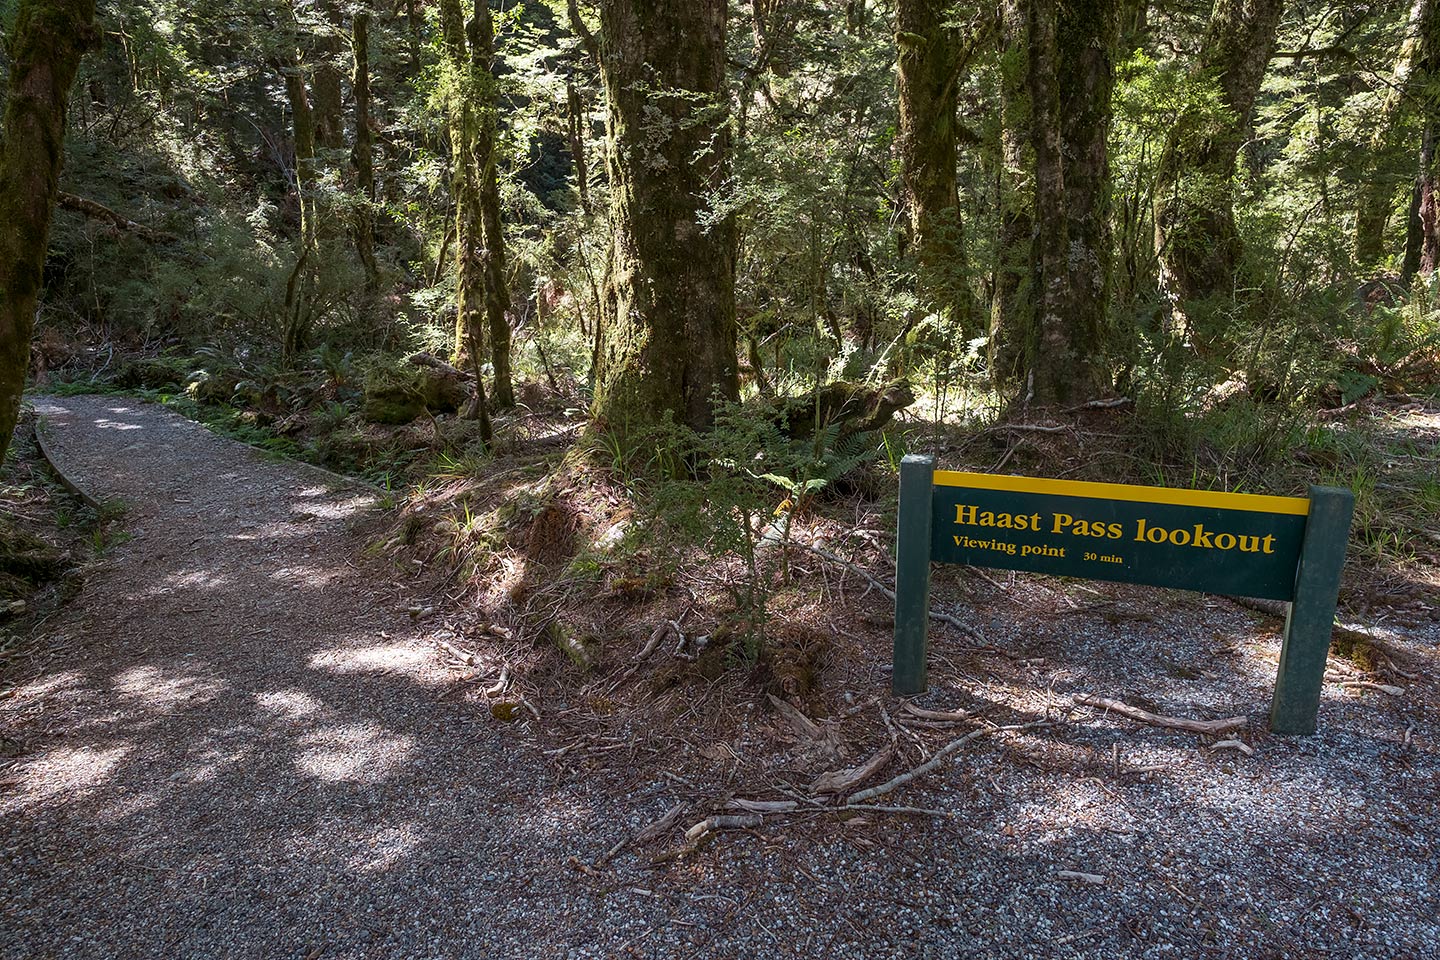 Haast Pass Tioripatea Lookout, Mount Aspiring National Park, New Zealand